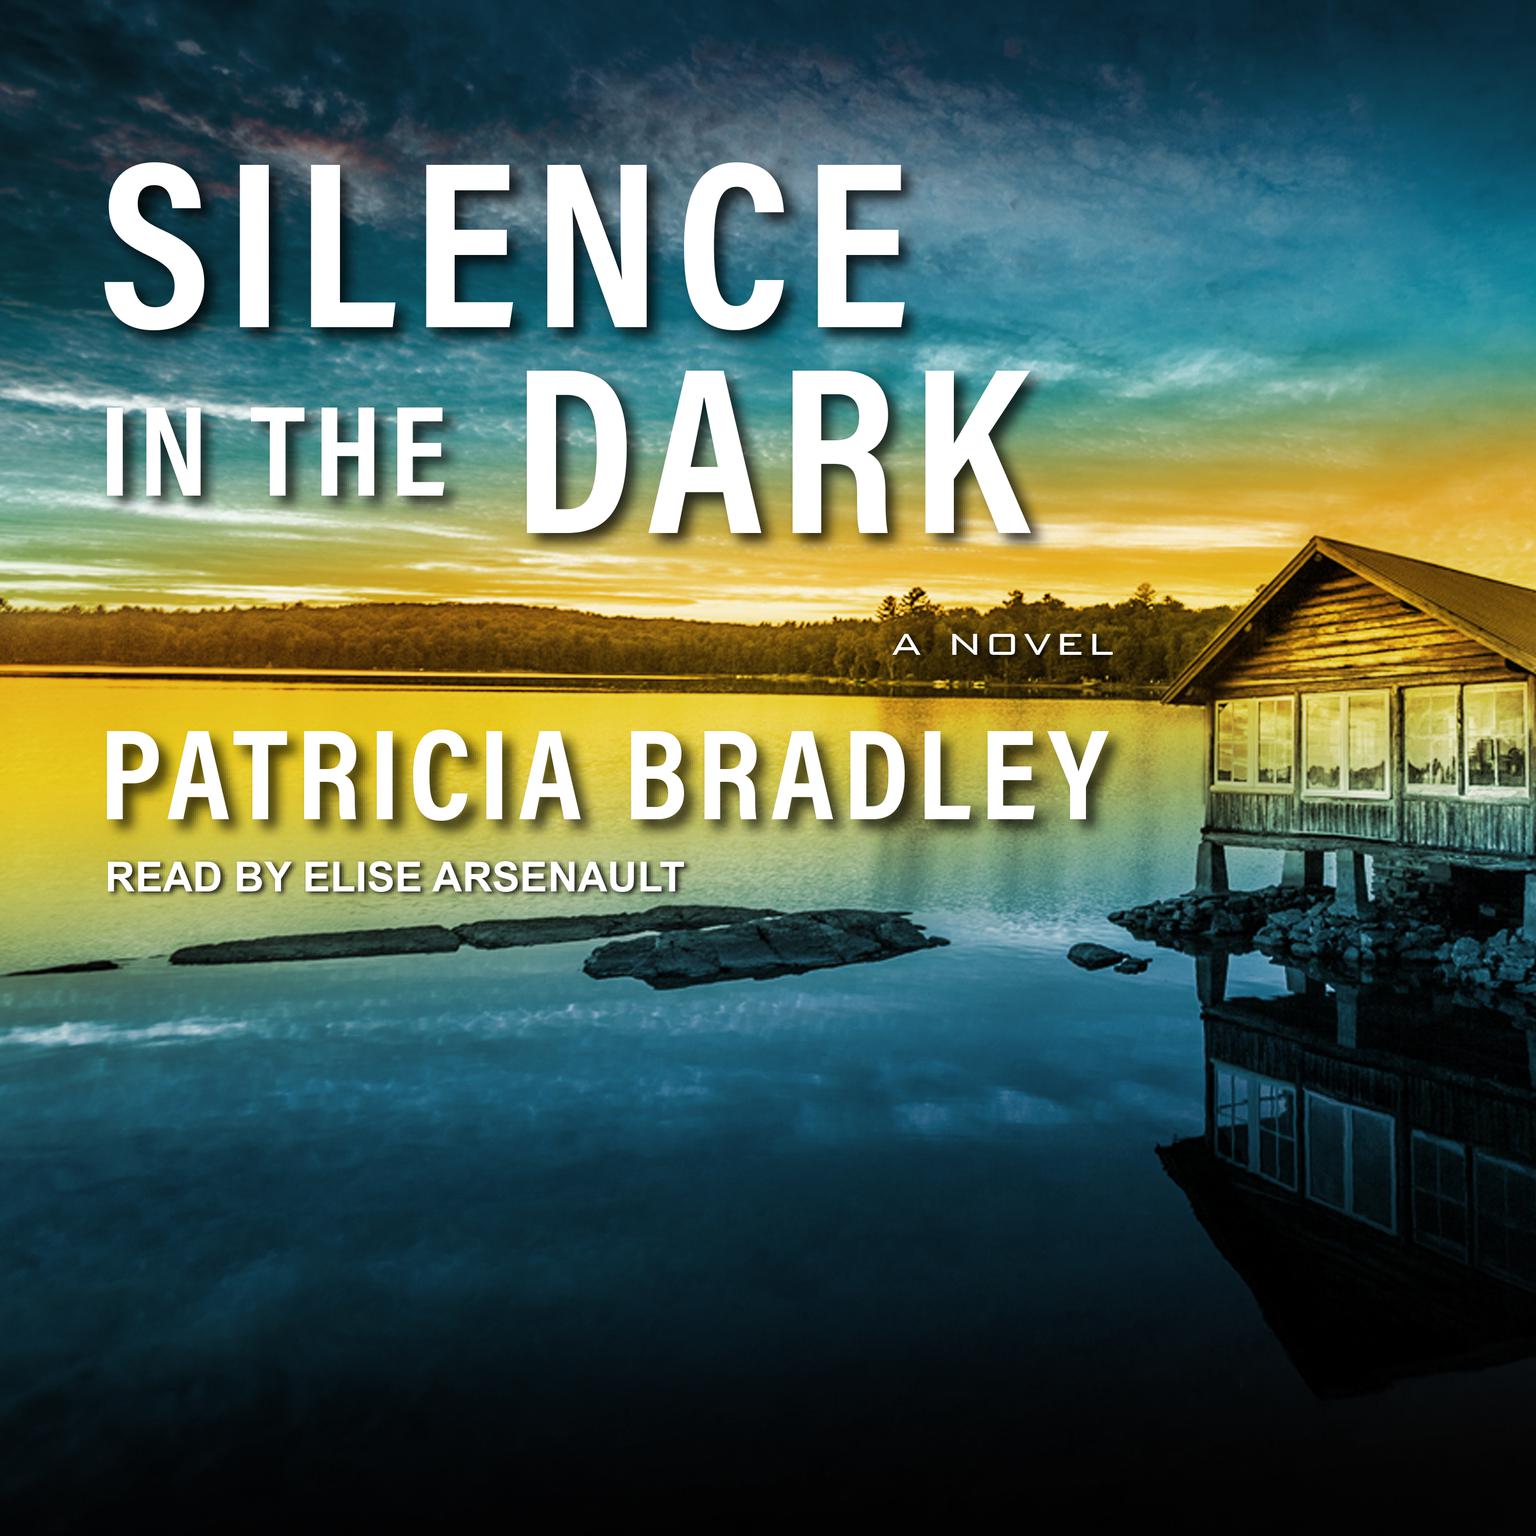 Silence in the Dark Audiobook, by Patricia Bradley